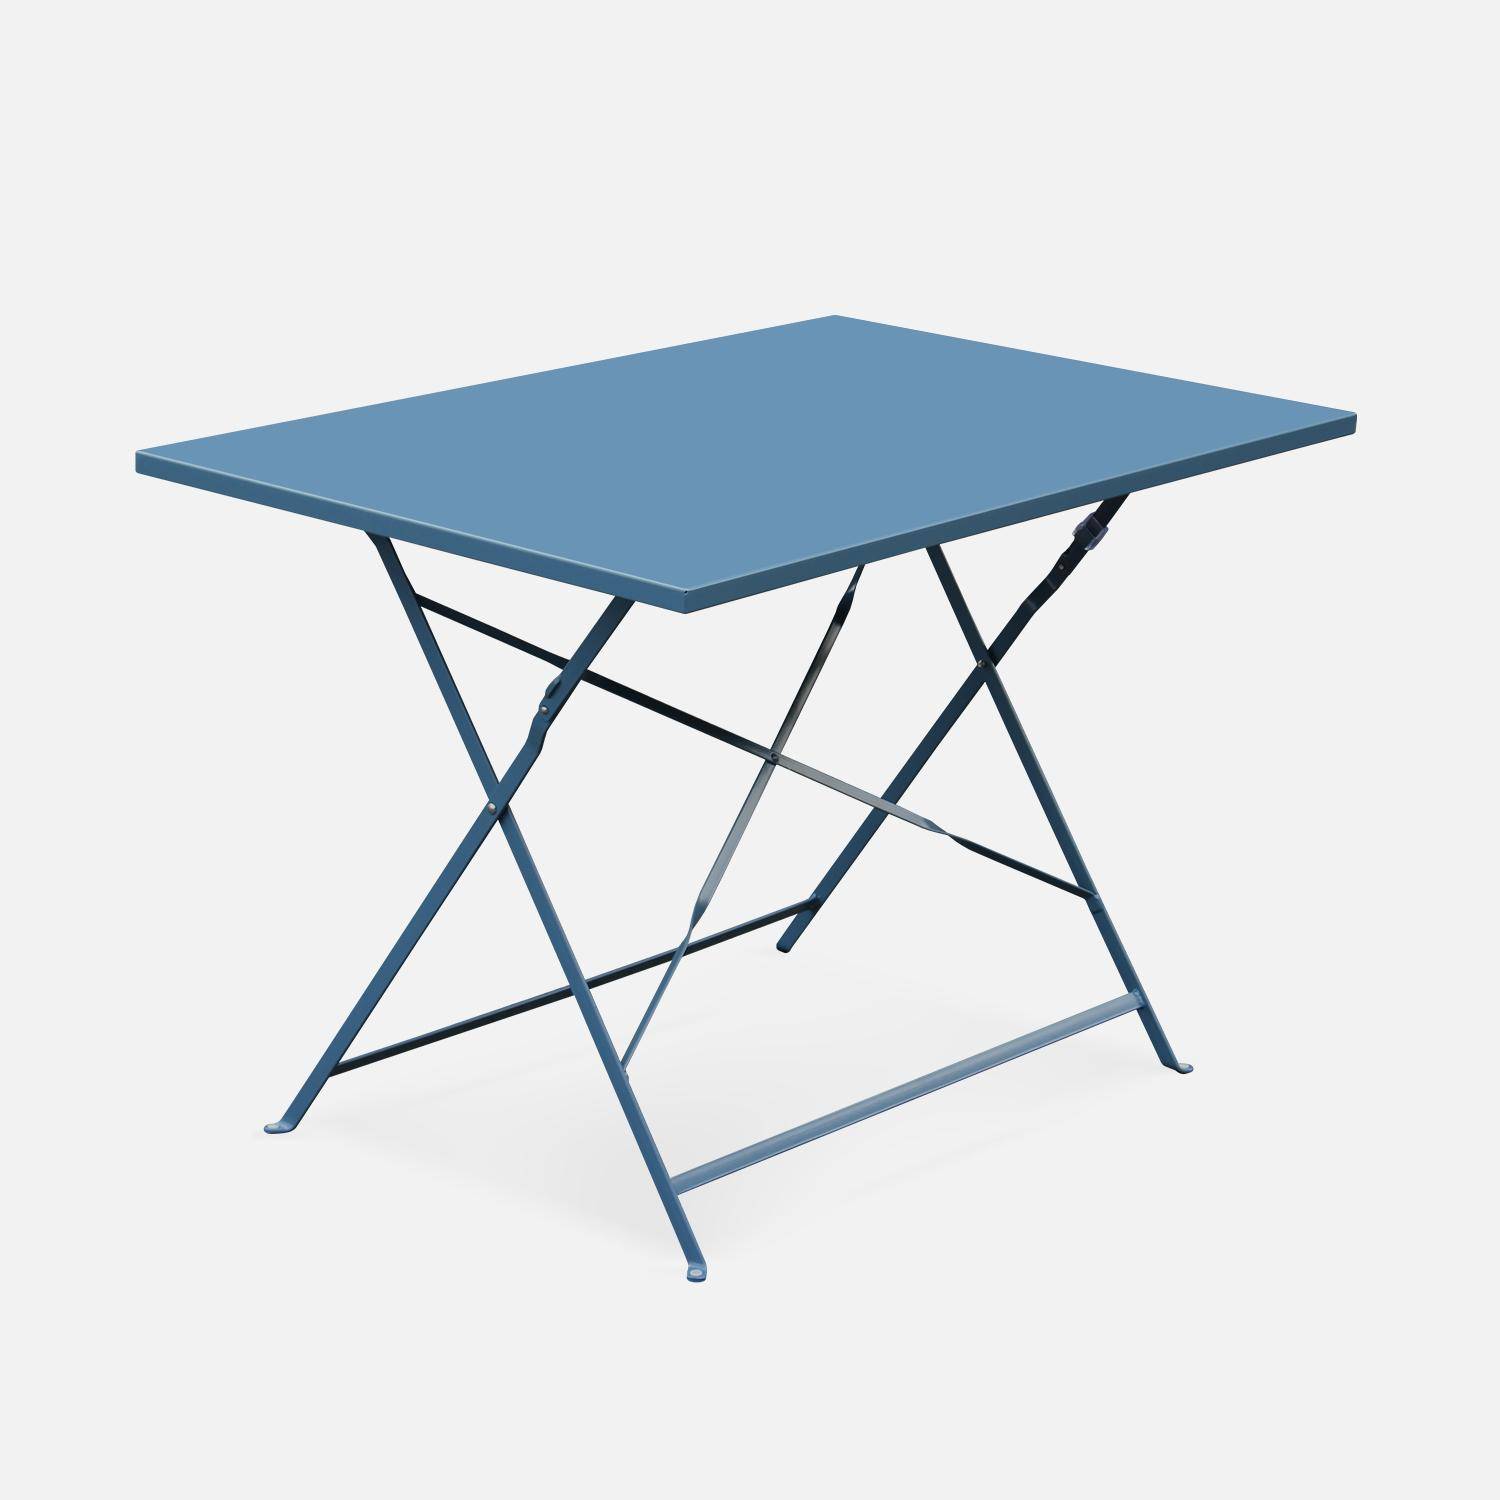 Salotto da giardino, bistrot, pieghevole - modello: Emilia, rettangolare, colore: Blu ombreggiato - Tavolo, dimensioni: 110x70cm, con quattro sedie pieghevoli, acciaio termolaccato Photo3